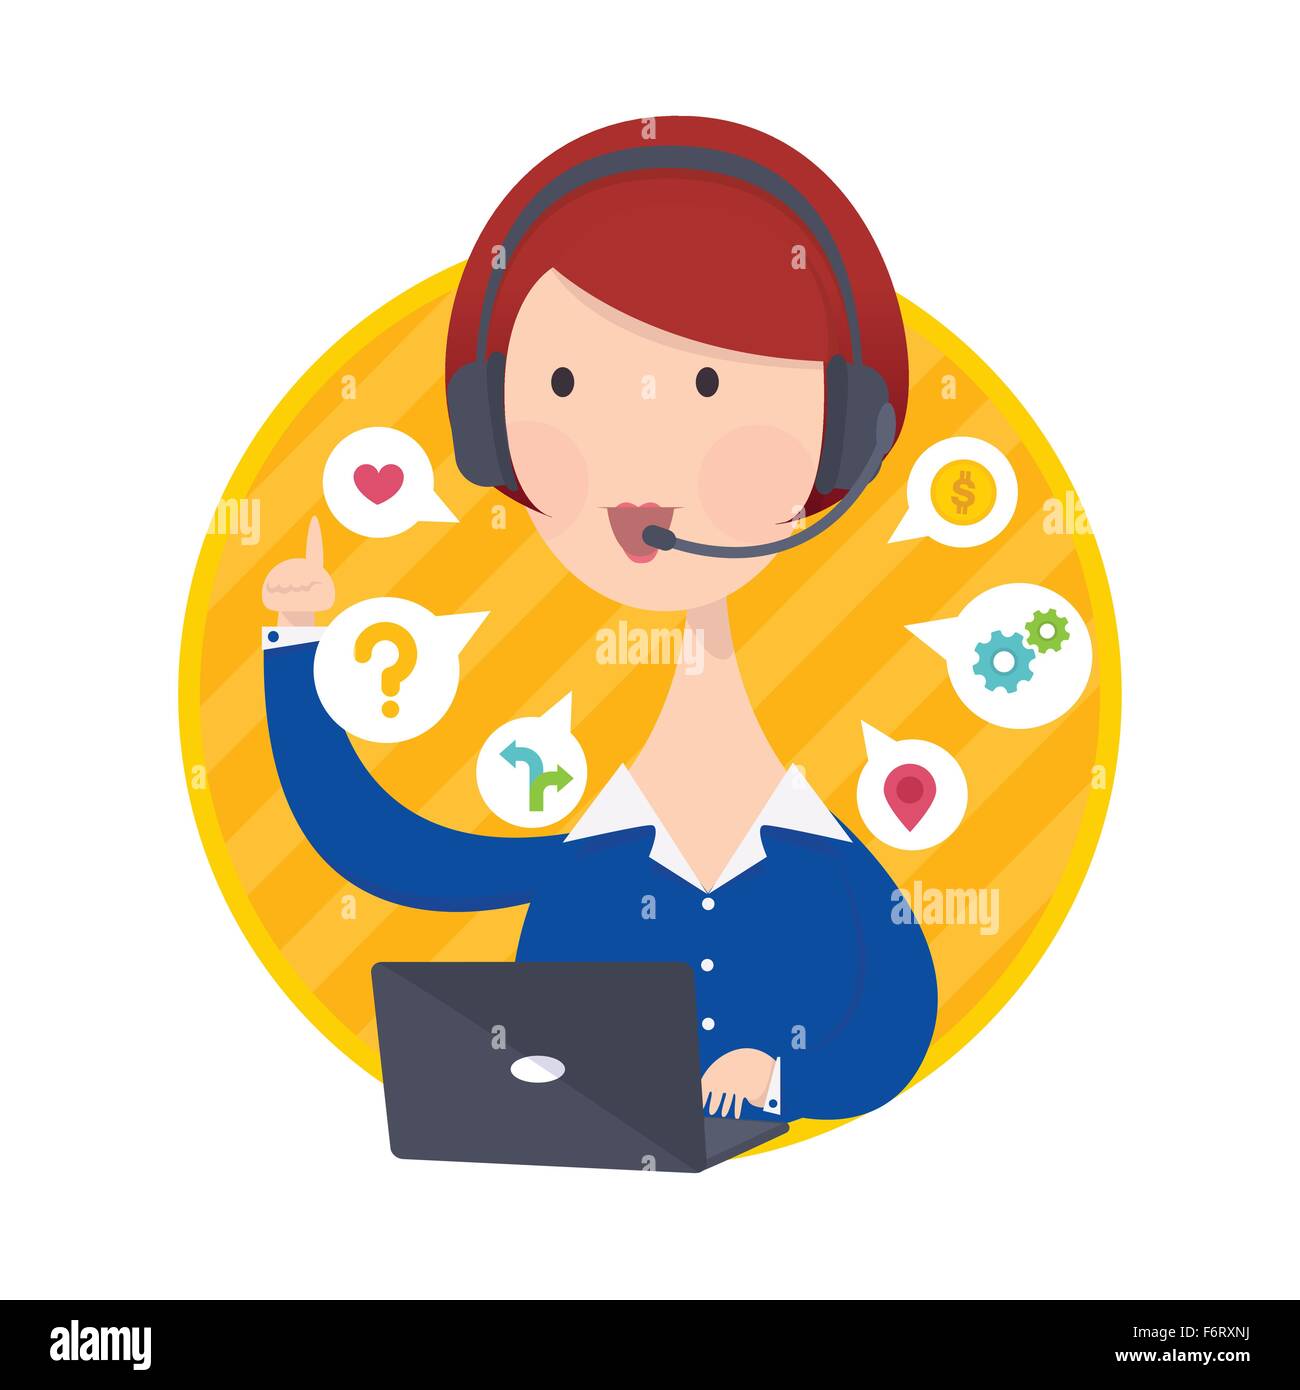 Vektor-Illustration von Customer Support helfen Schreibtisch Frau im blauen Hemd Operator Service-Konzept Stock Vektor